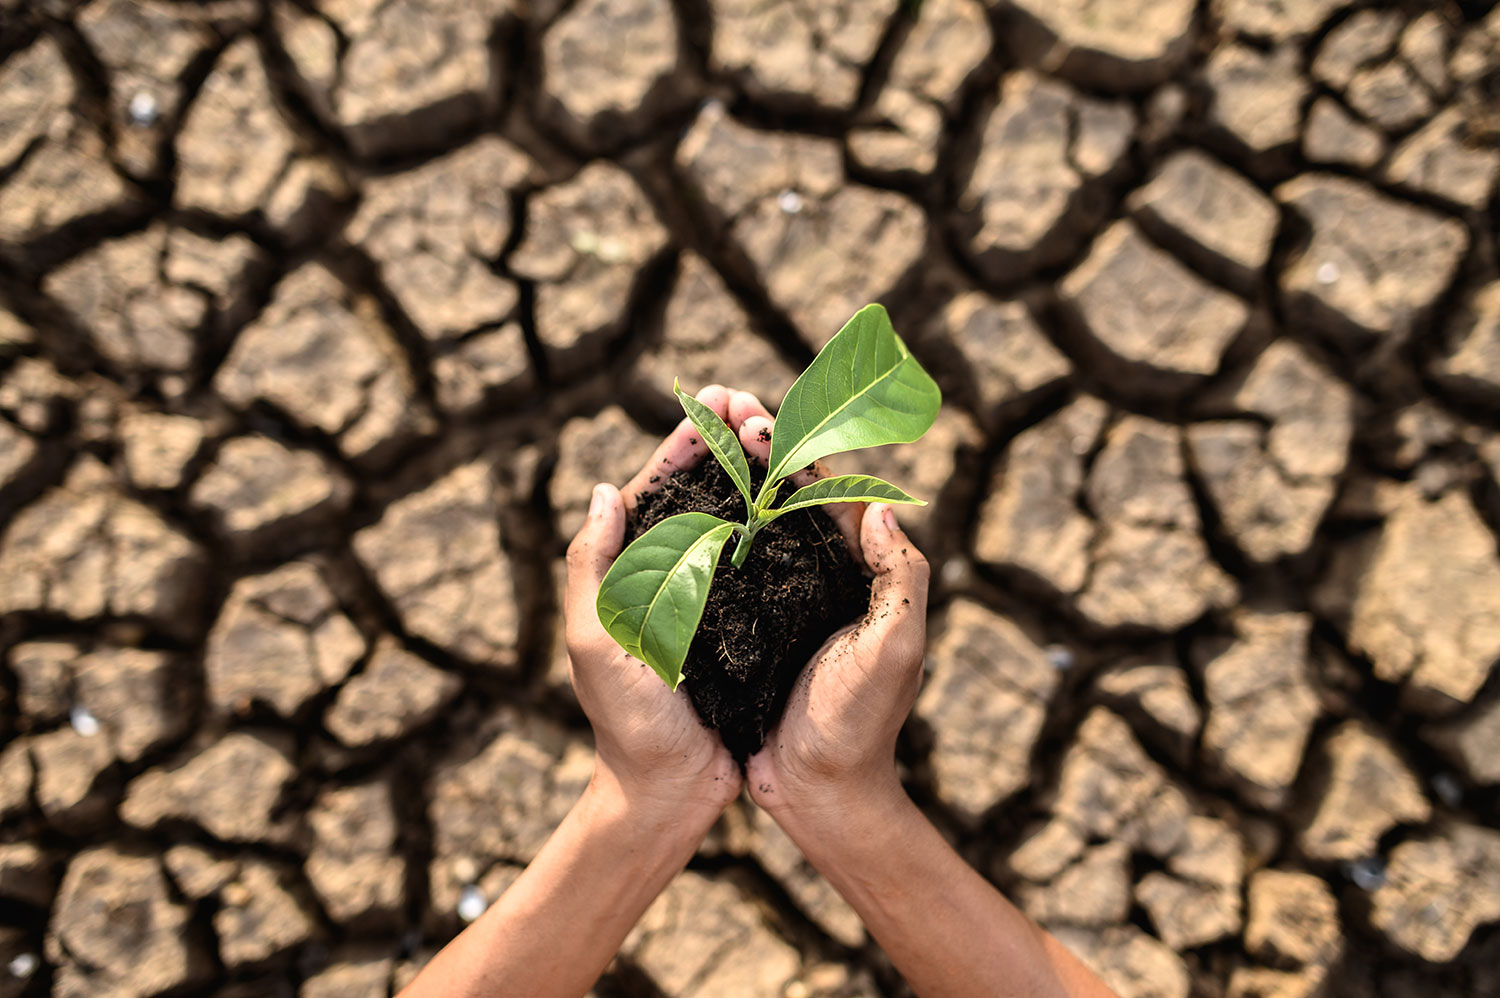 Javni poziv za prijavu štete na imovini (poljoprivrednim kulturama) oštećenika uzrokovane prirodnom nepogodom zbog suše